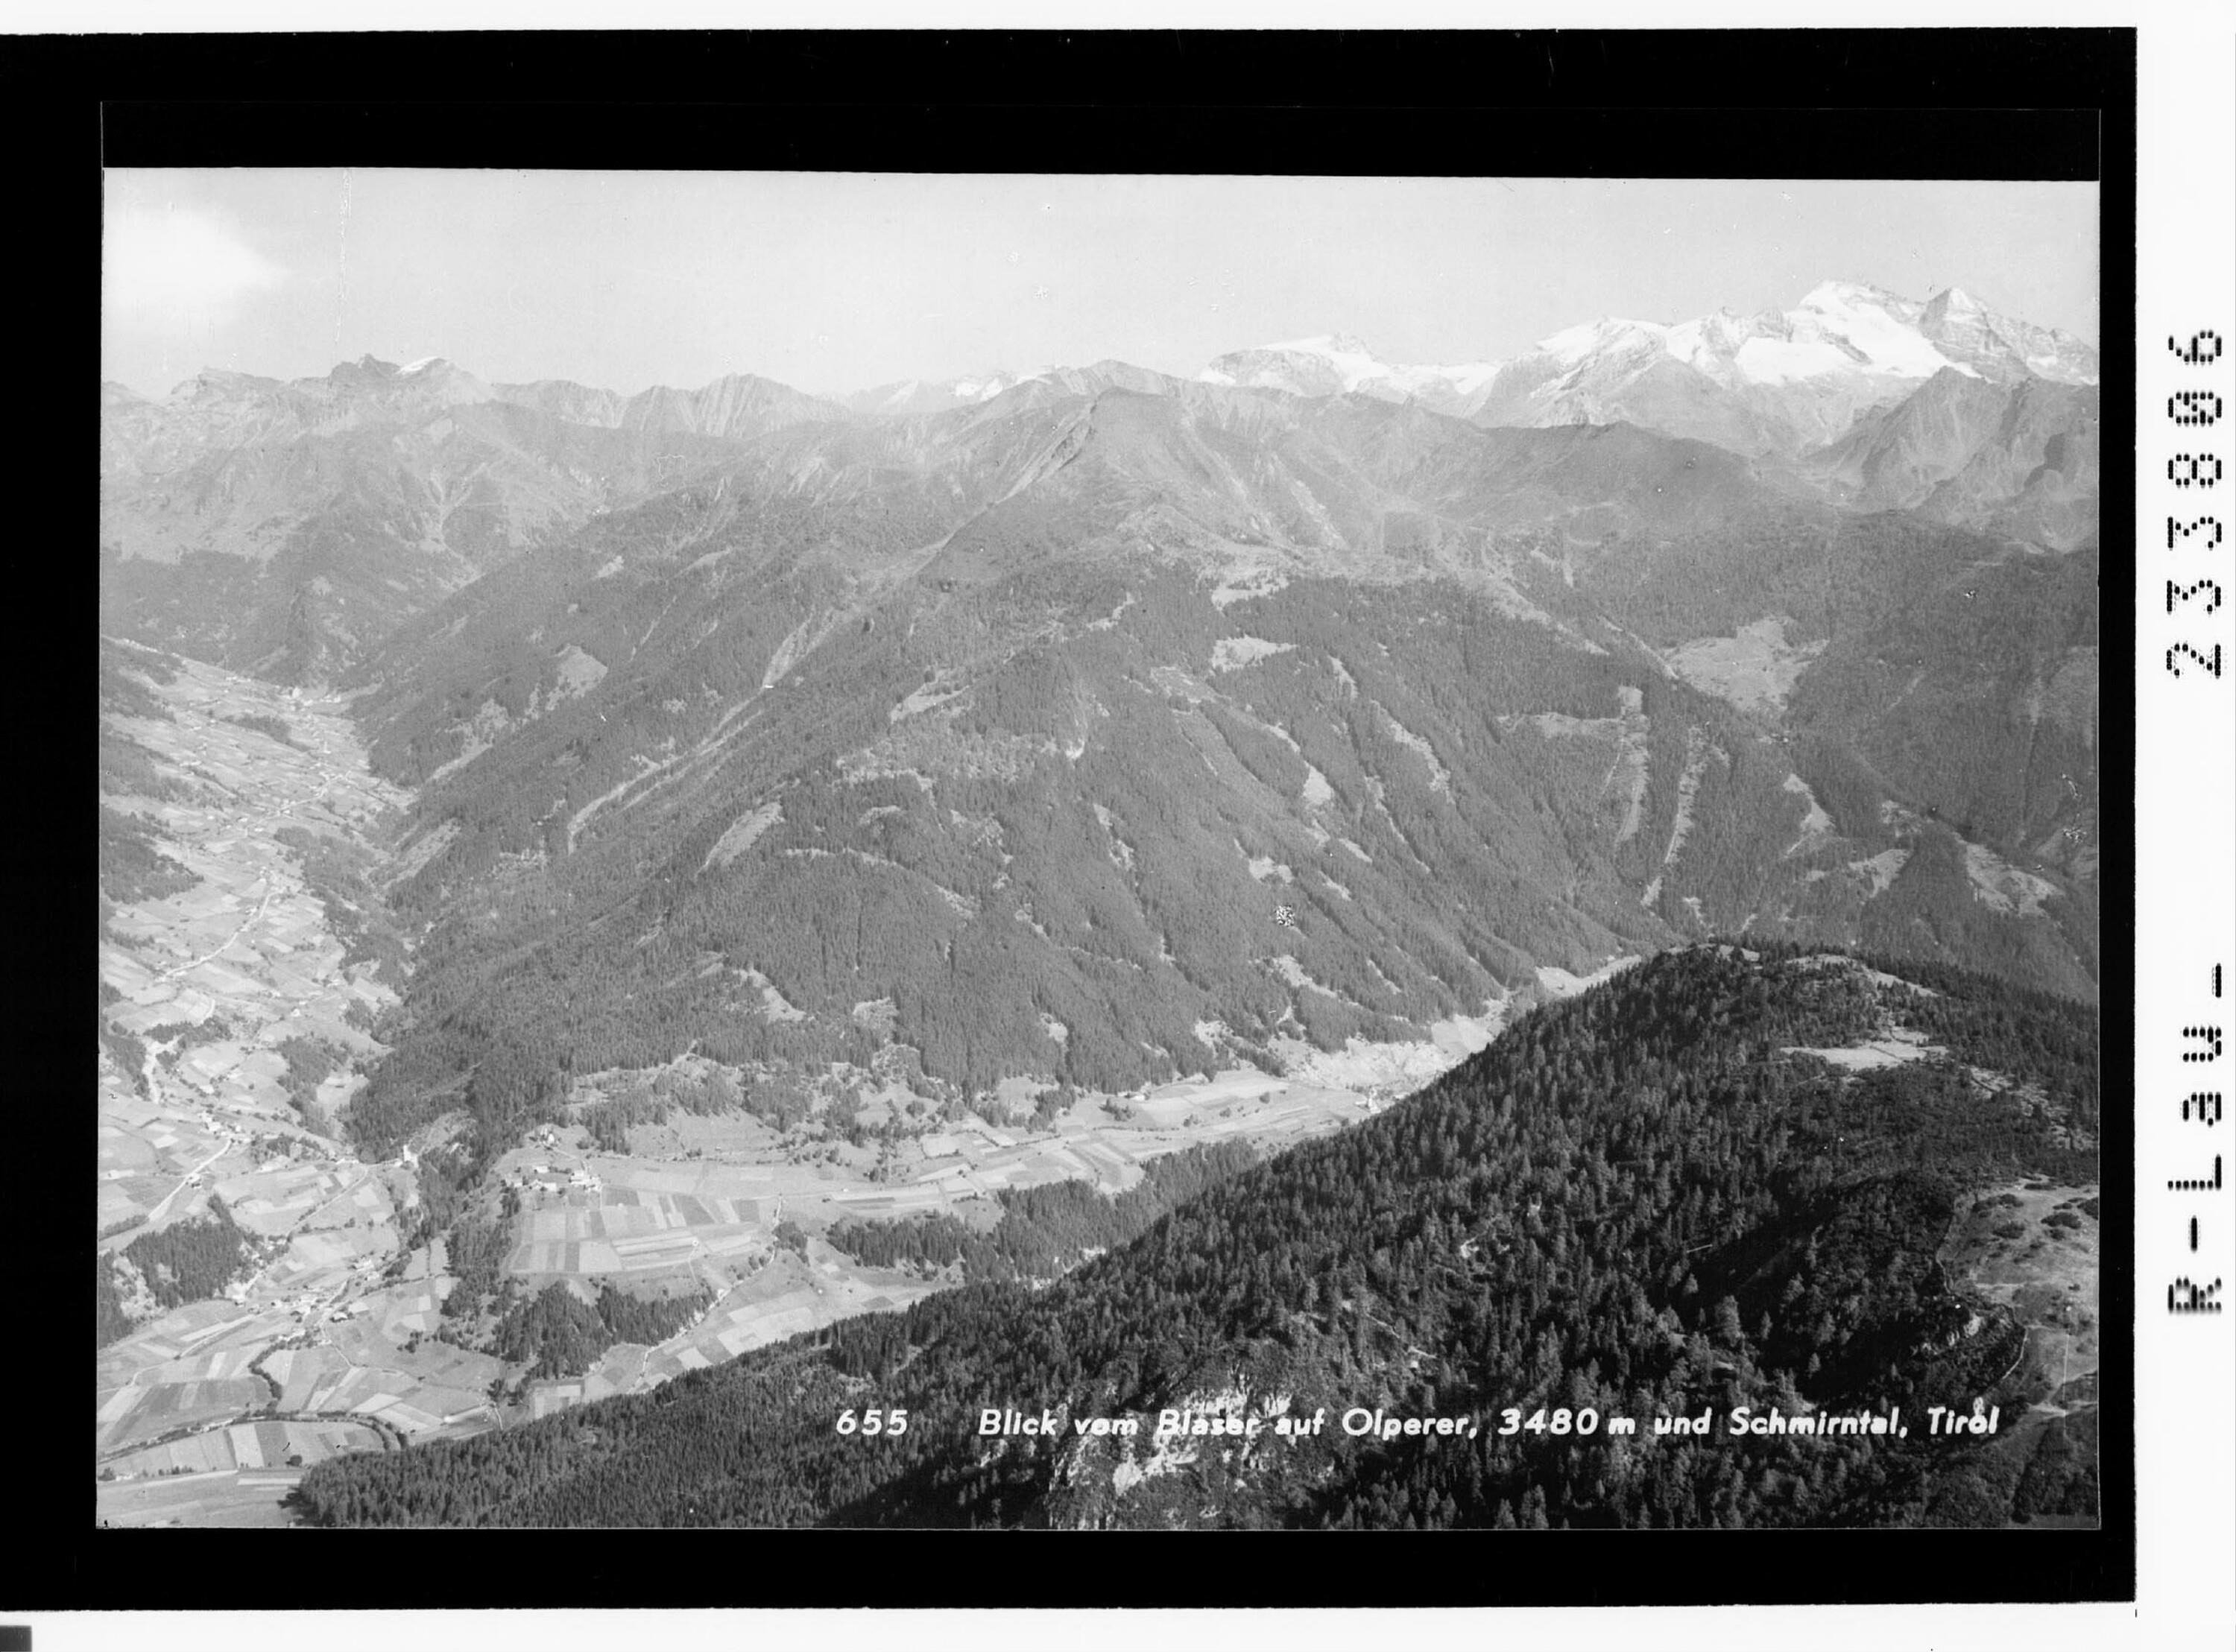 Blick vom Blaser auf Olperer, 3480 m und Schmirntal, Tirol></div>


    <hr>
    <div class=